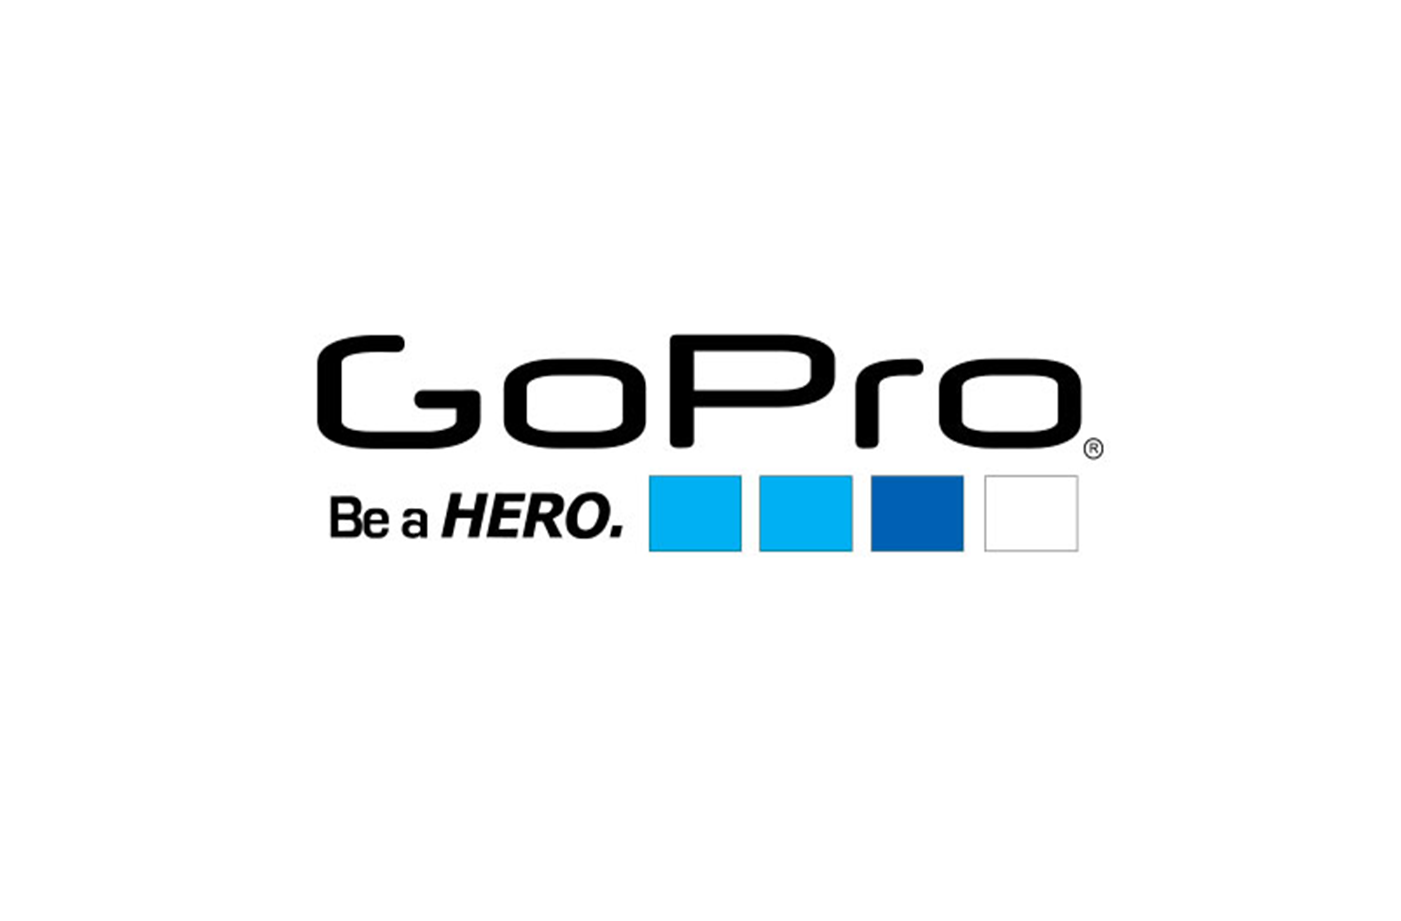 Sticker GoPro gratis! Ecco come ottenerli - Copertina1